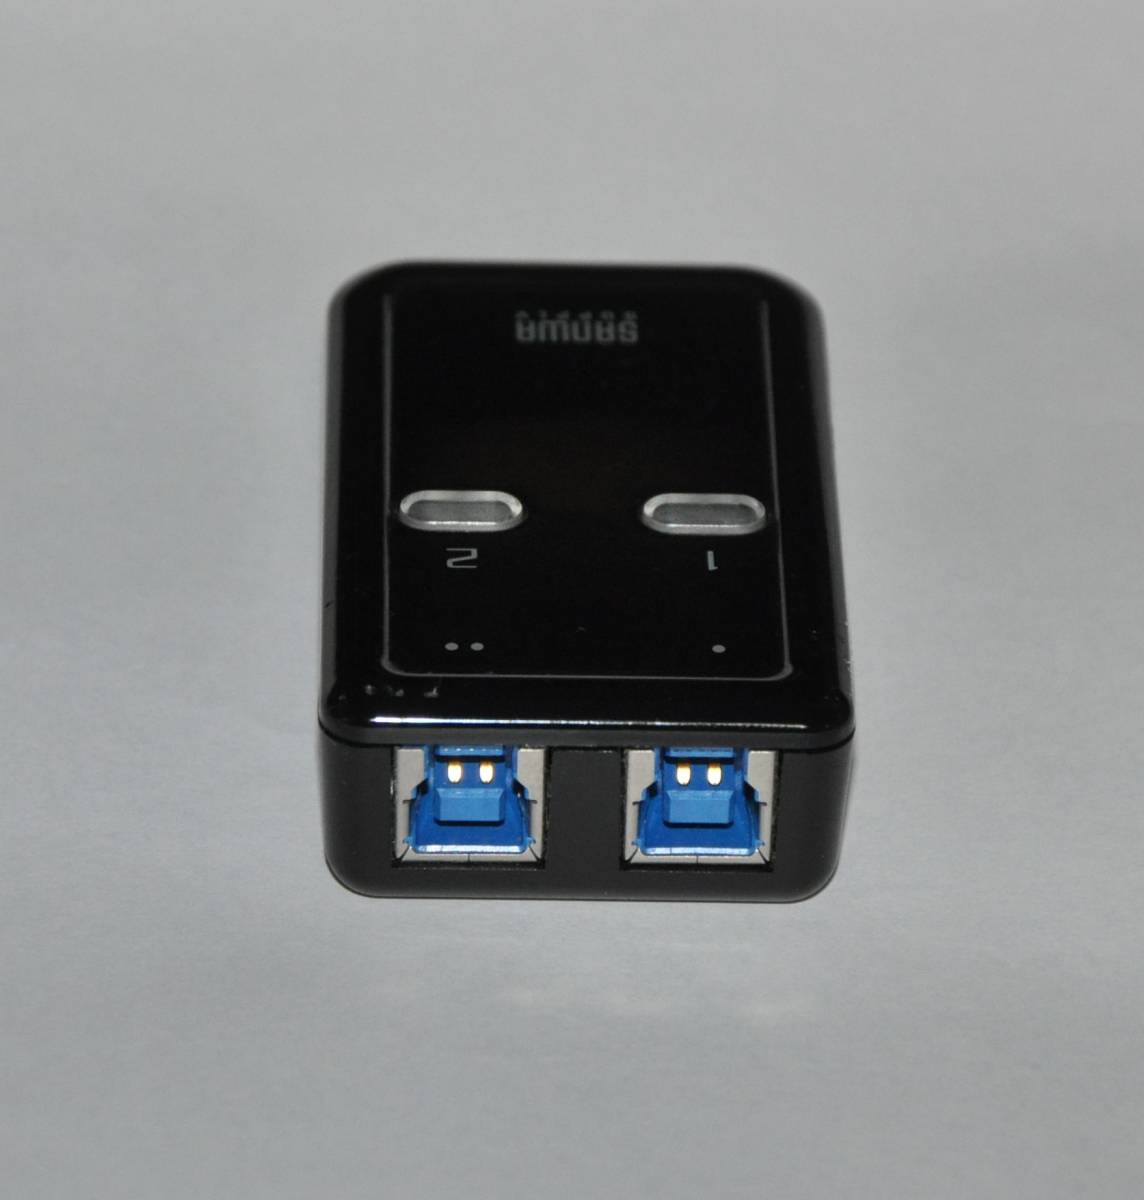 「2台のパソコン」で「1台のUSB3.1/3.0機器」を切り替えて共有できる「USB3.0切替器」 SANWA USB3.0切替器(2回路)「SW-US32」 (動作確認済)_画像1